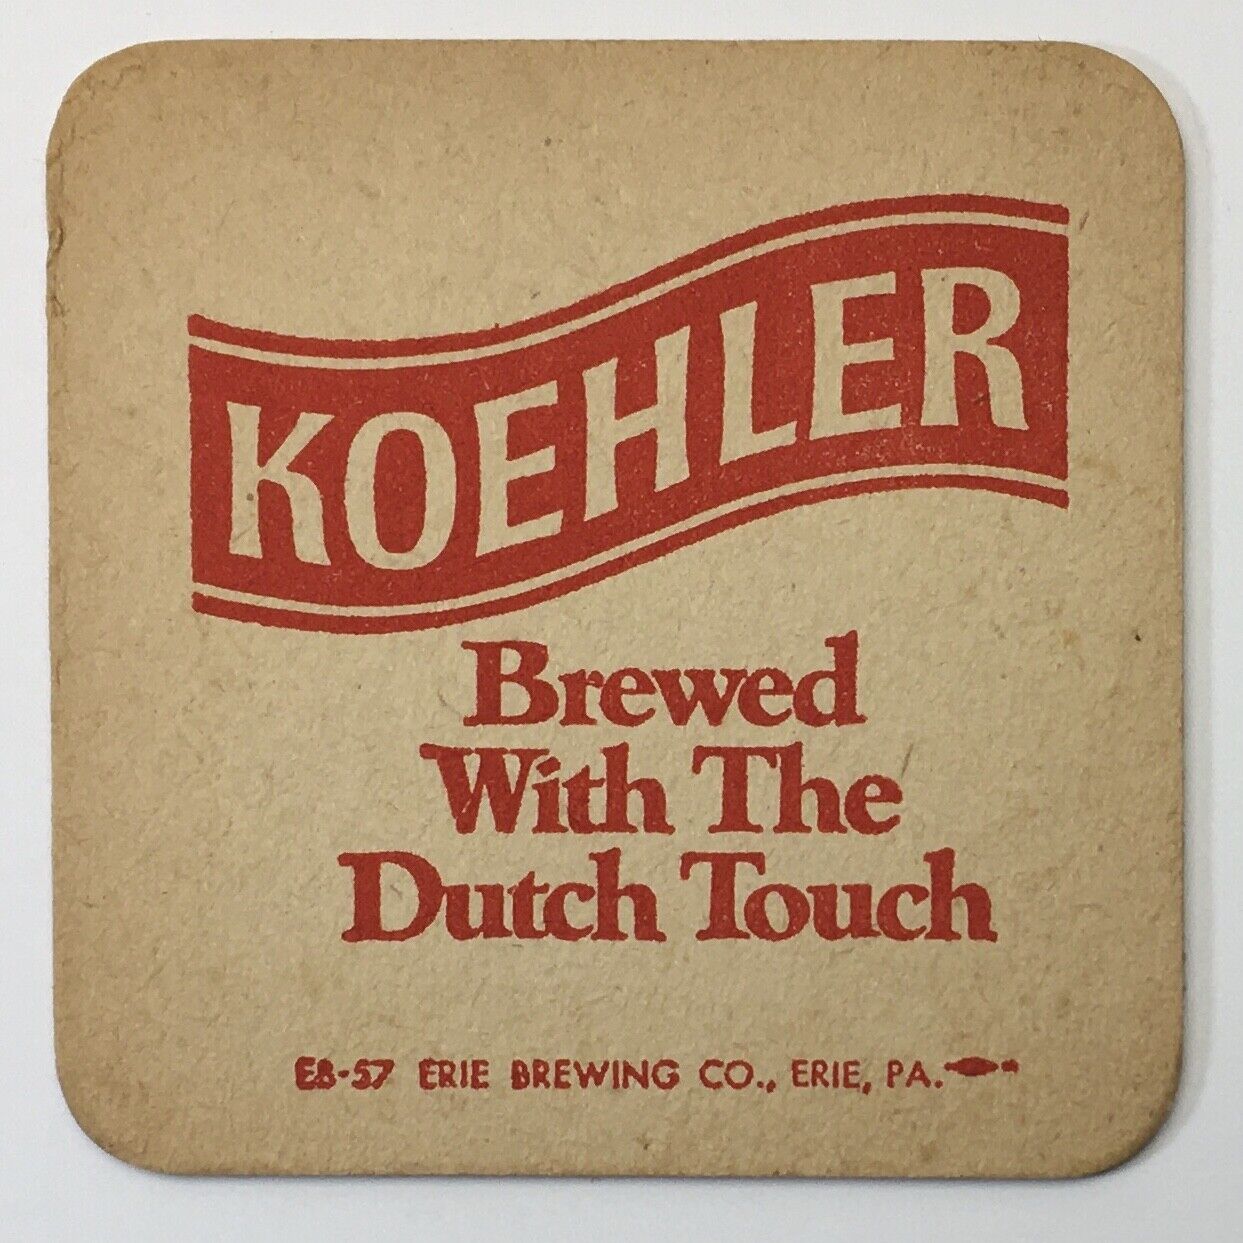 Koehler Beer Coaster (2 Images) Erie, PA Vintage